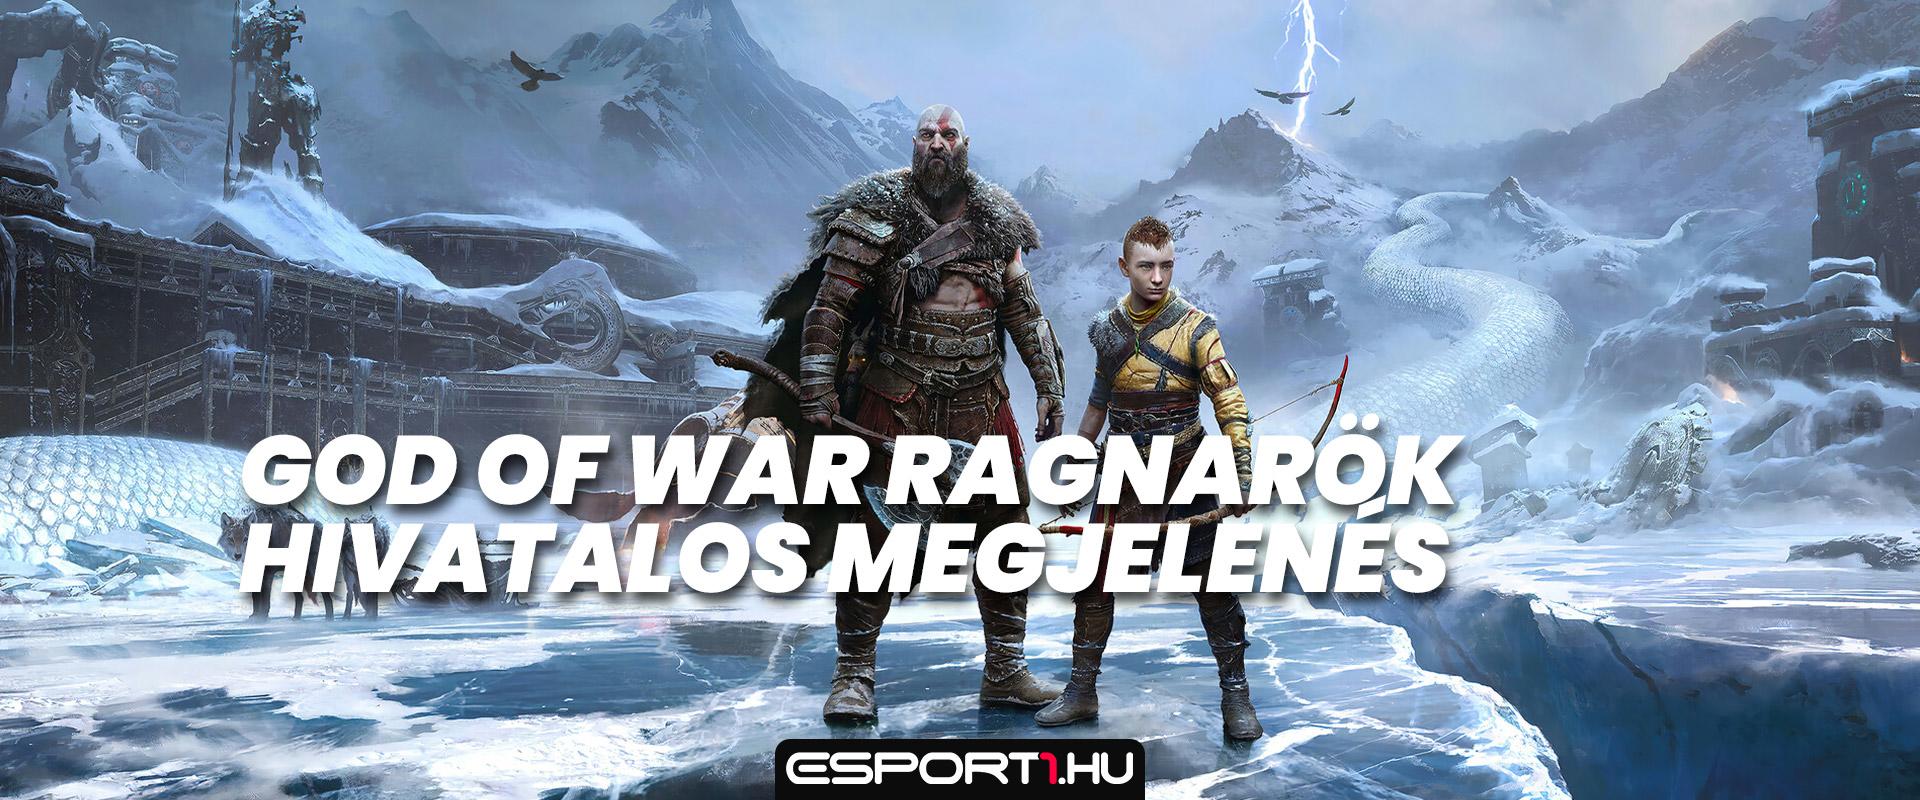 Gaming: Itt van végre a God of War Ragnarök hivatalos megjelenési dátuma